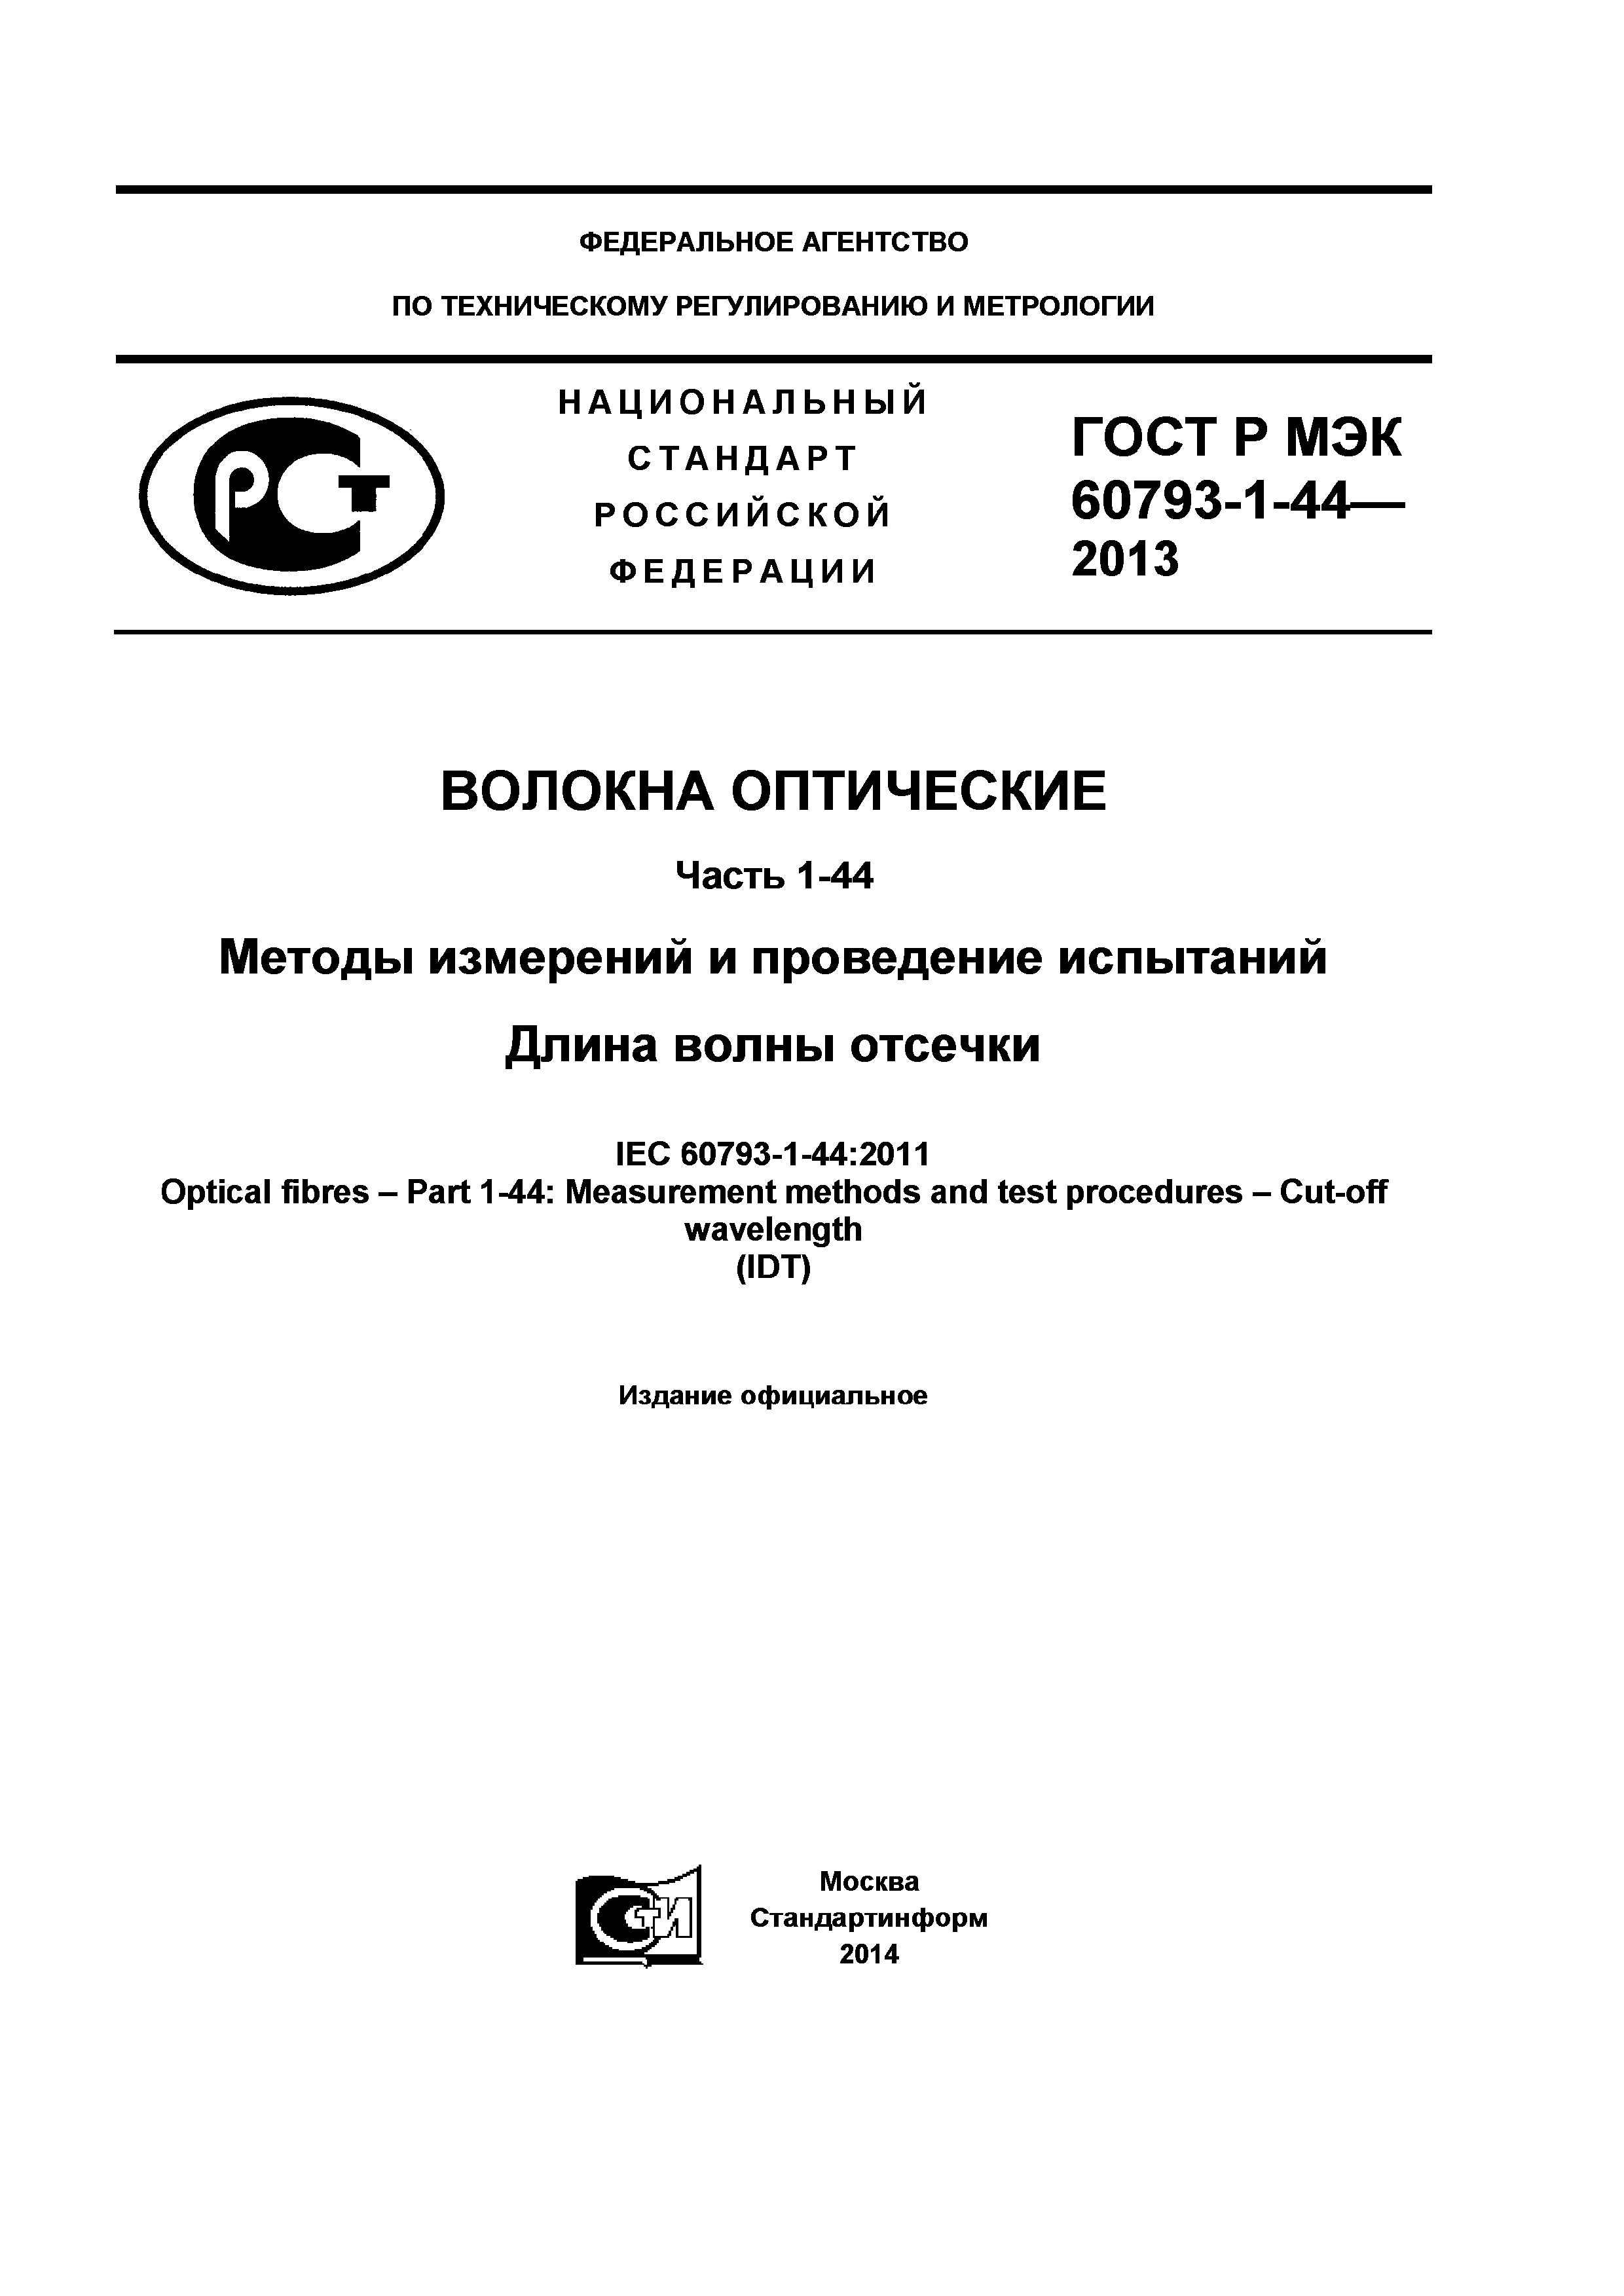 ГОСТ Р МЭК 60793-1-44-2013